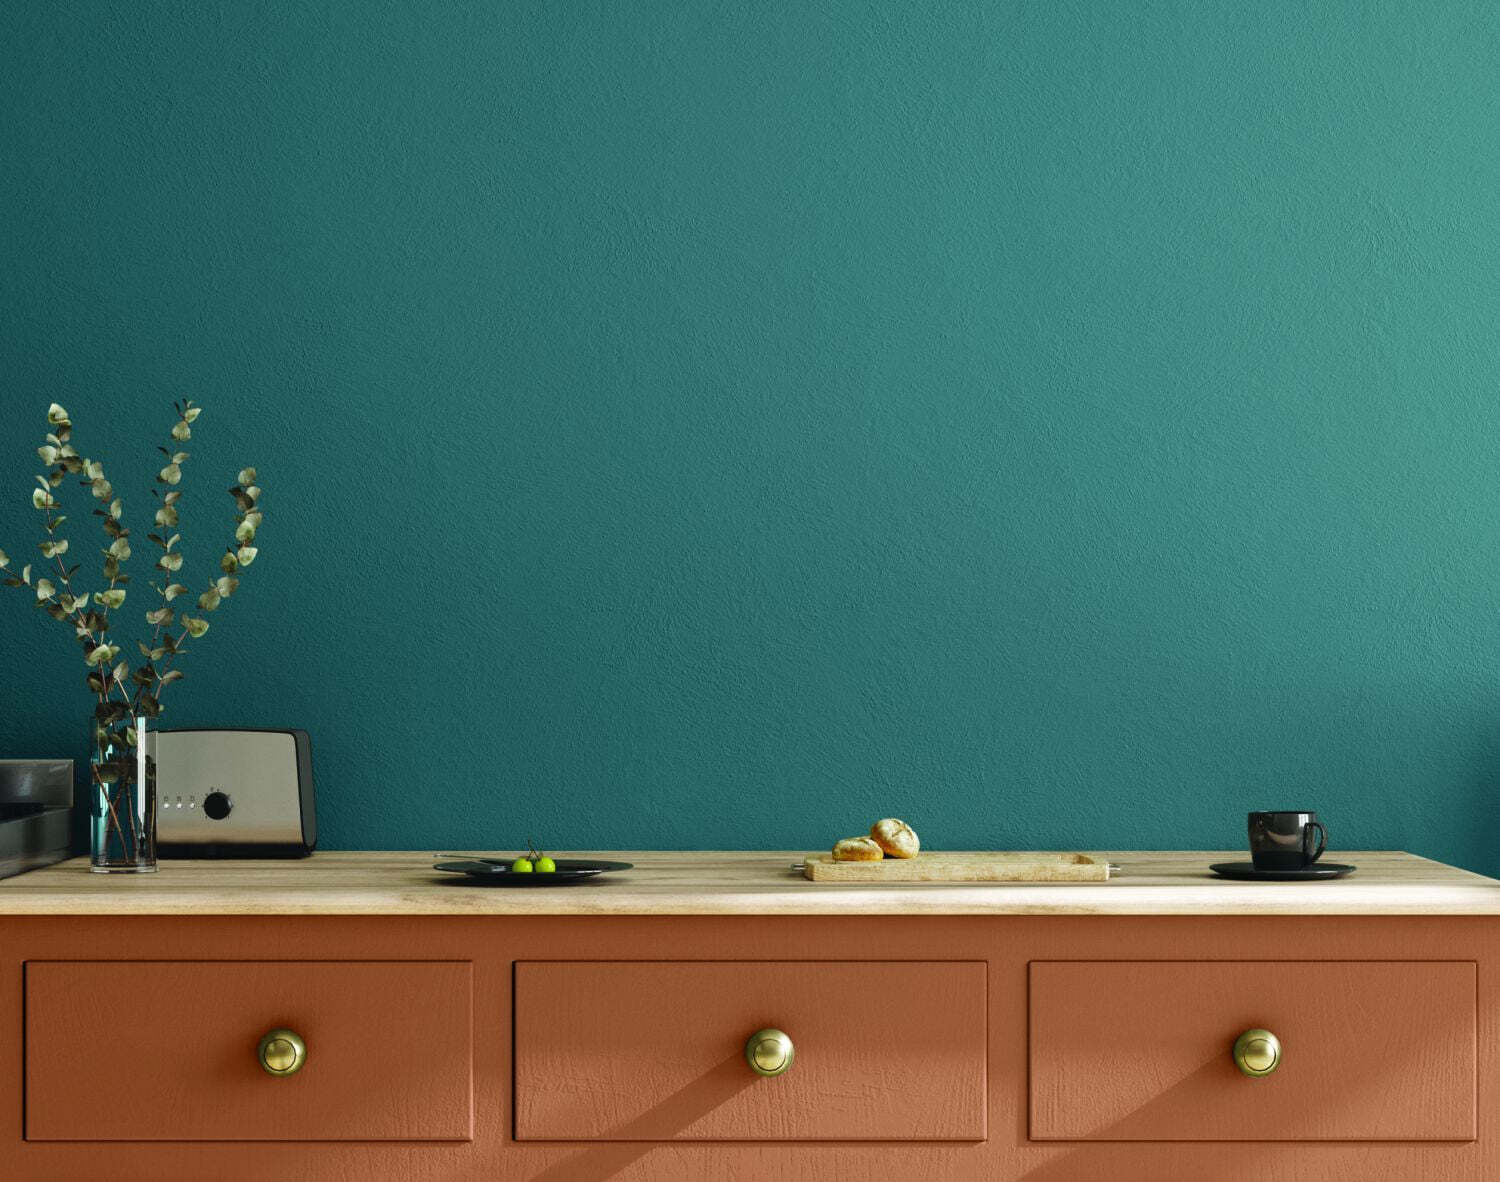 мебель бежевого цвета и стены сине-зеленые